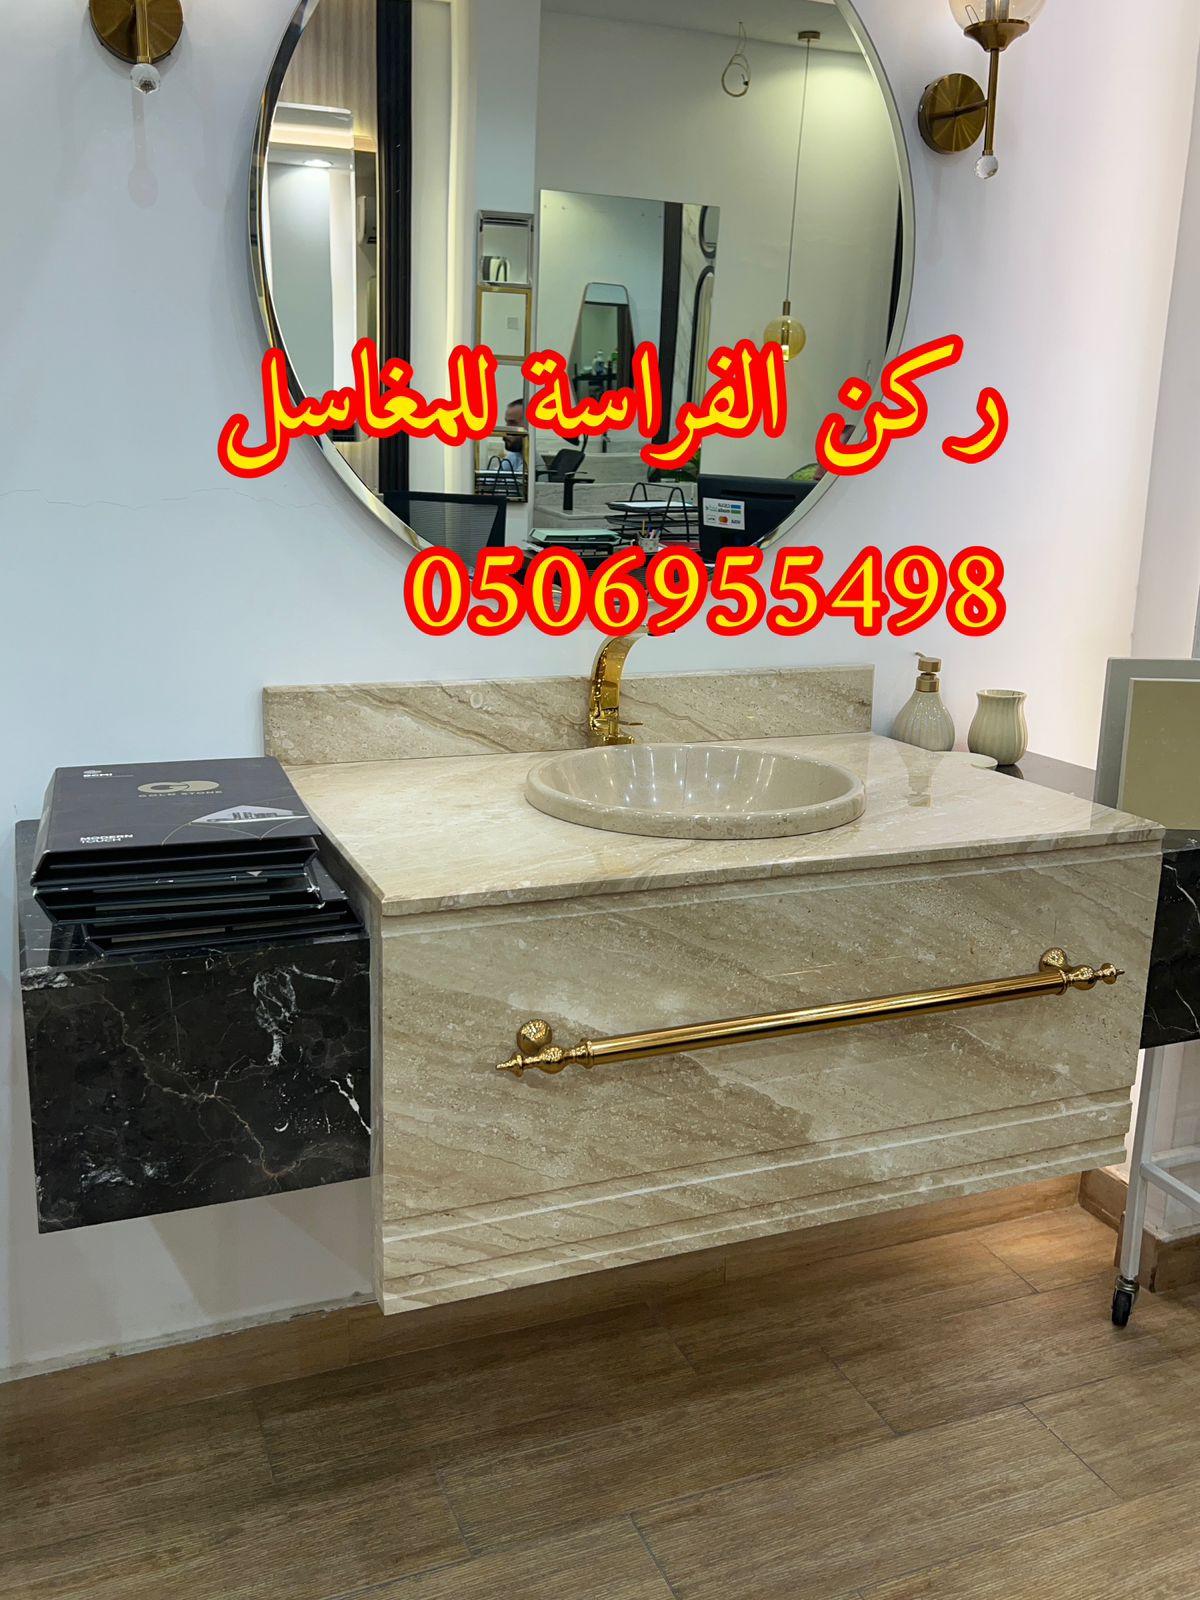 الرياض - تفصيل احواض مغاسل رخام في الرياض,0506955498 915313407